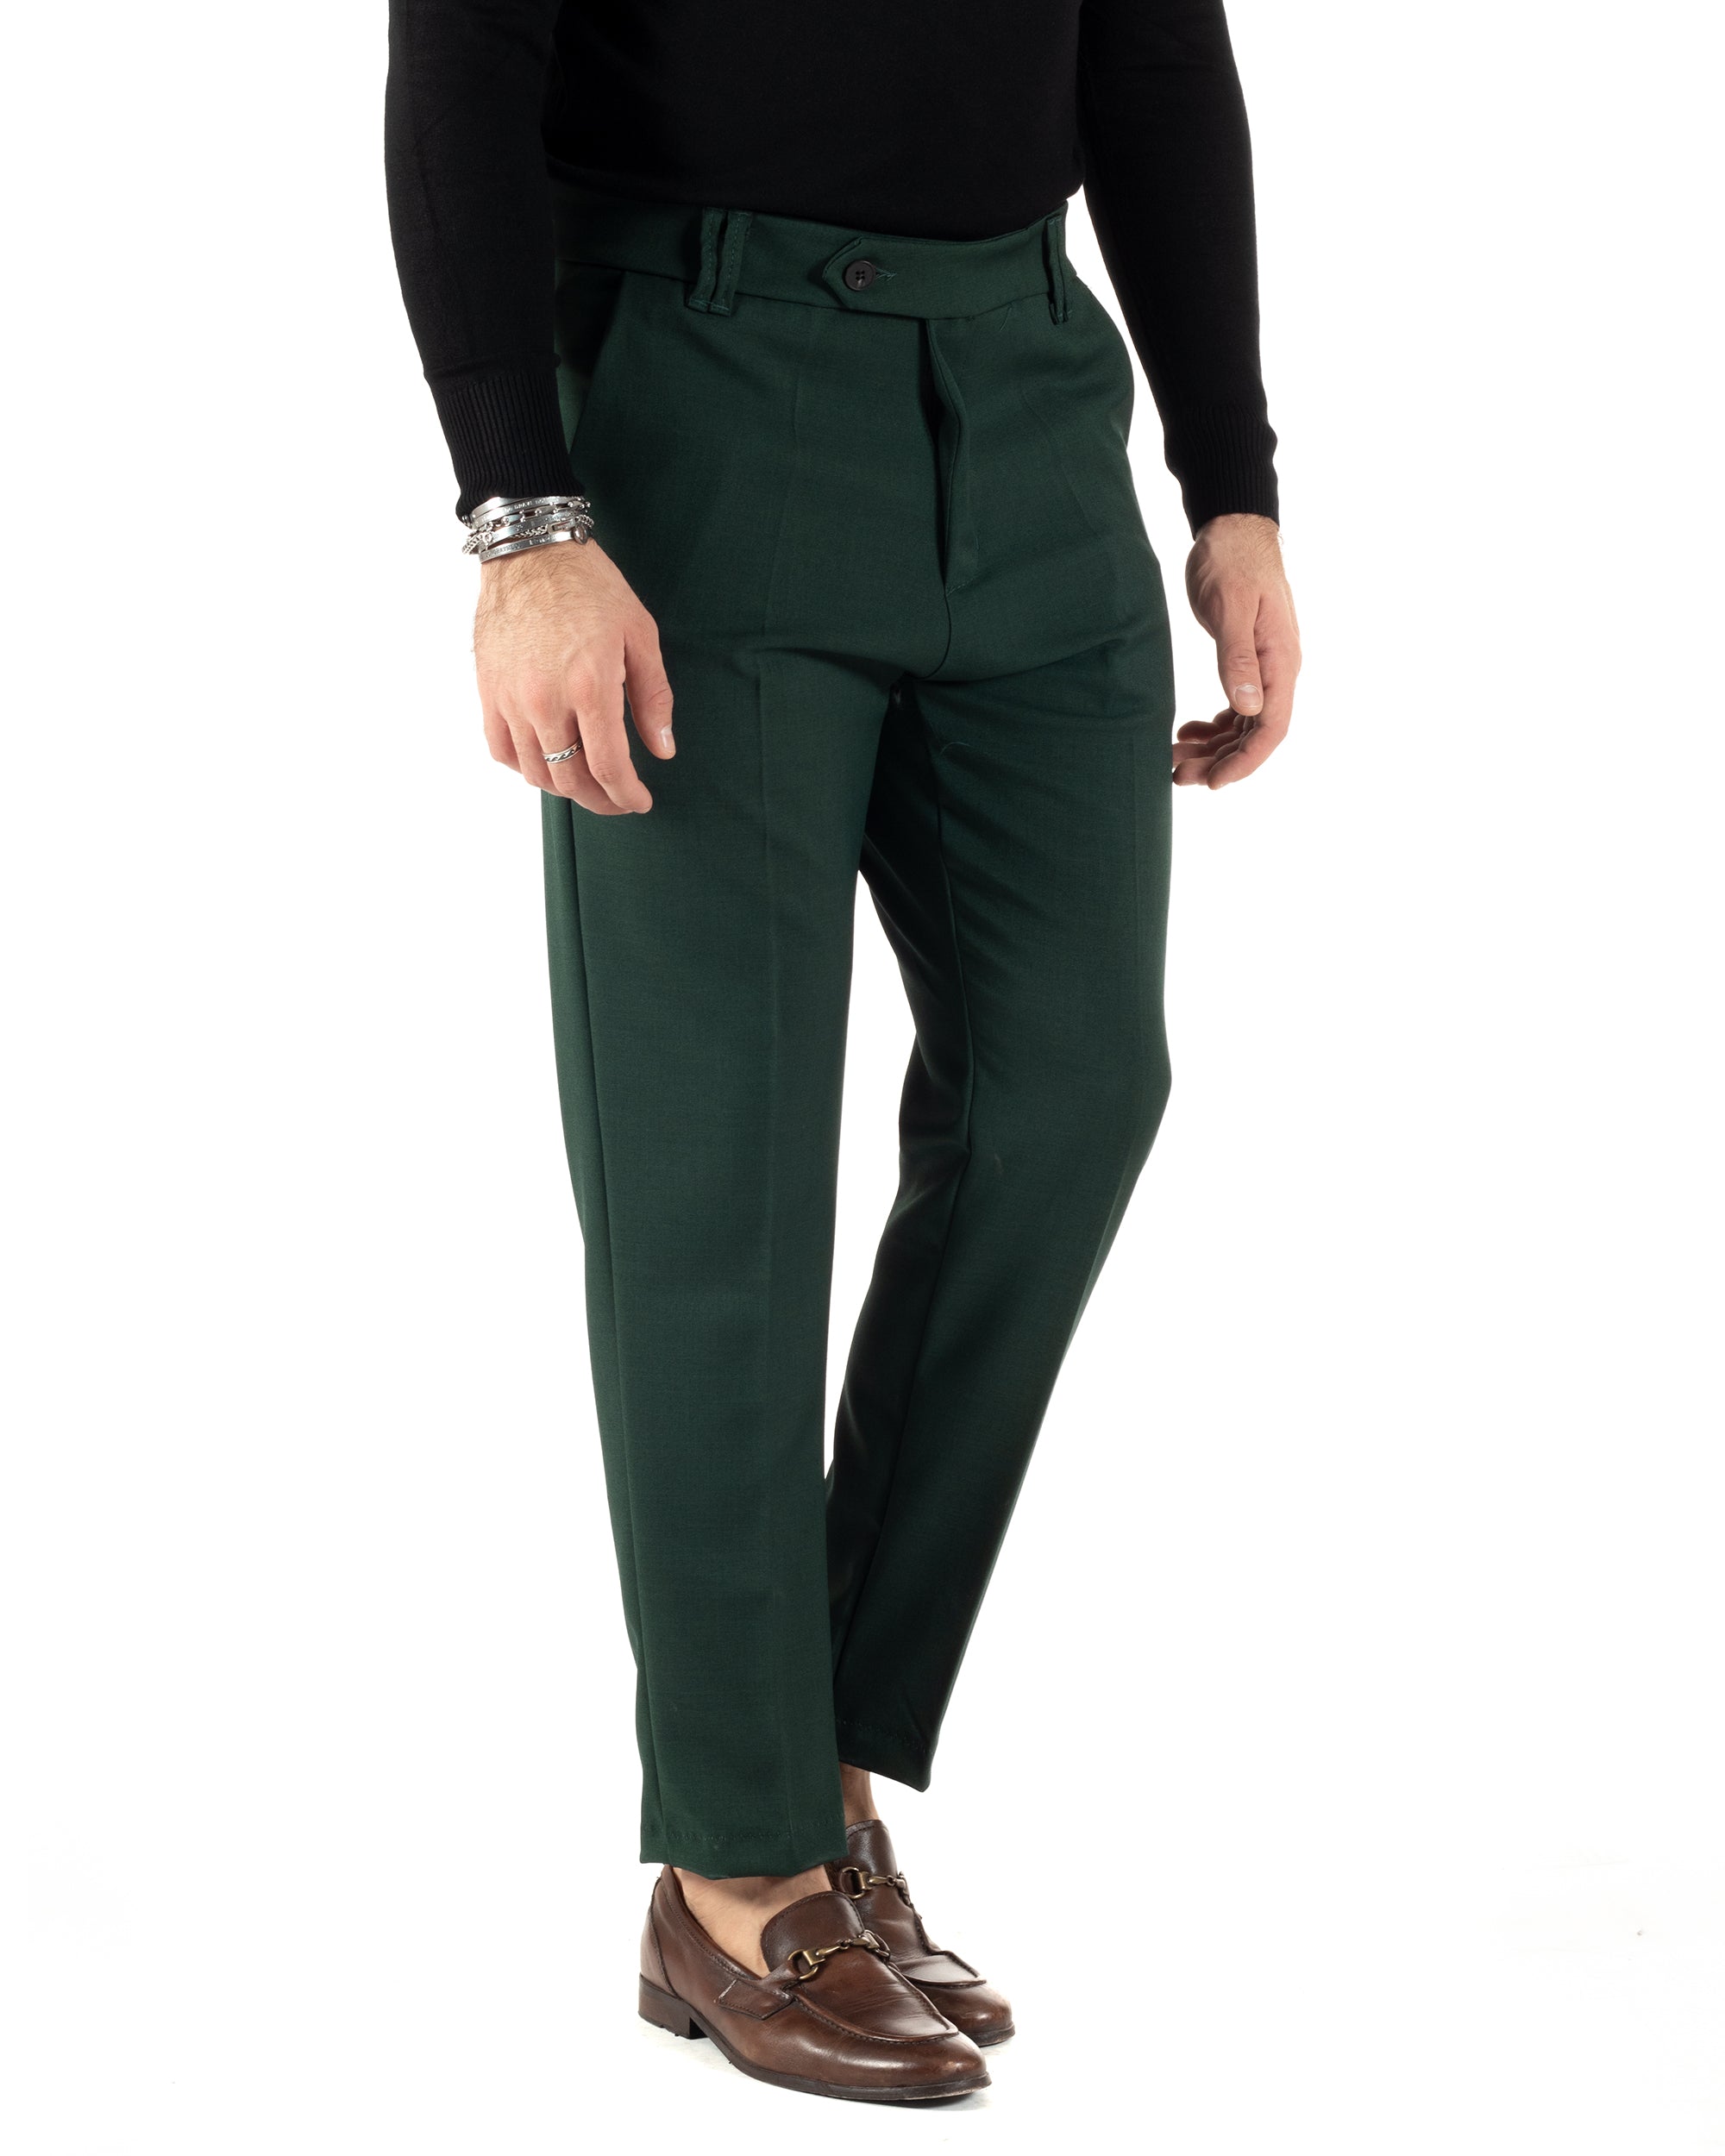 Pantaloni Uomo Viscosa Tasca America Classico Abbottonatura Allungata Casual Verde GIOSAL-P6010A